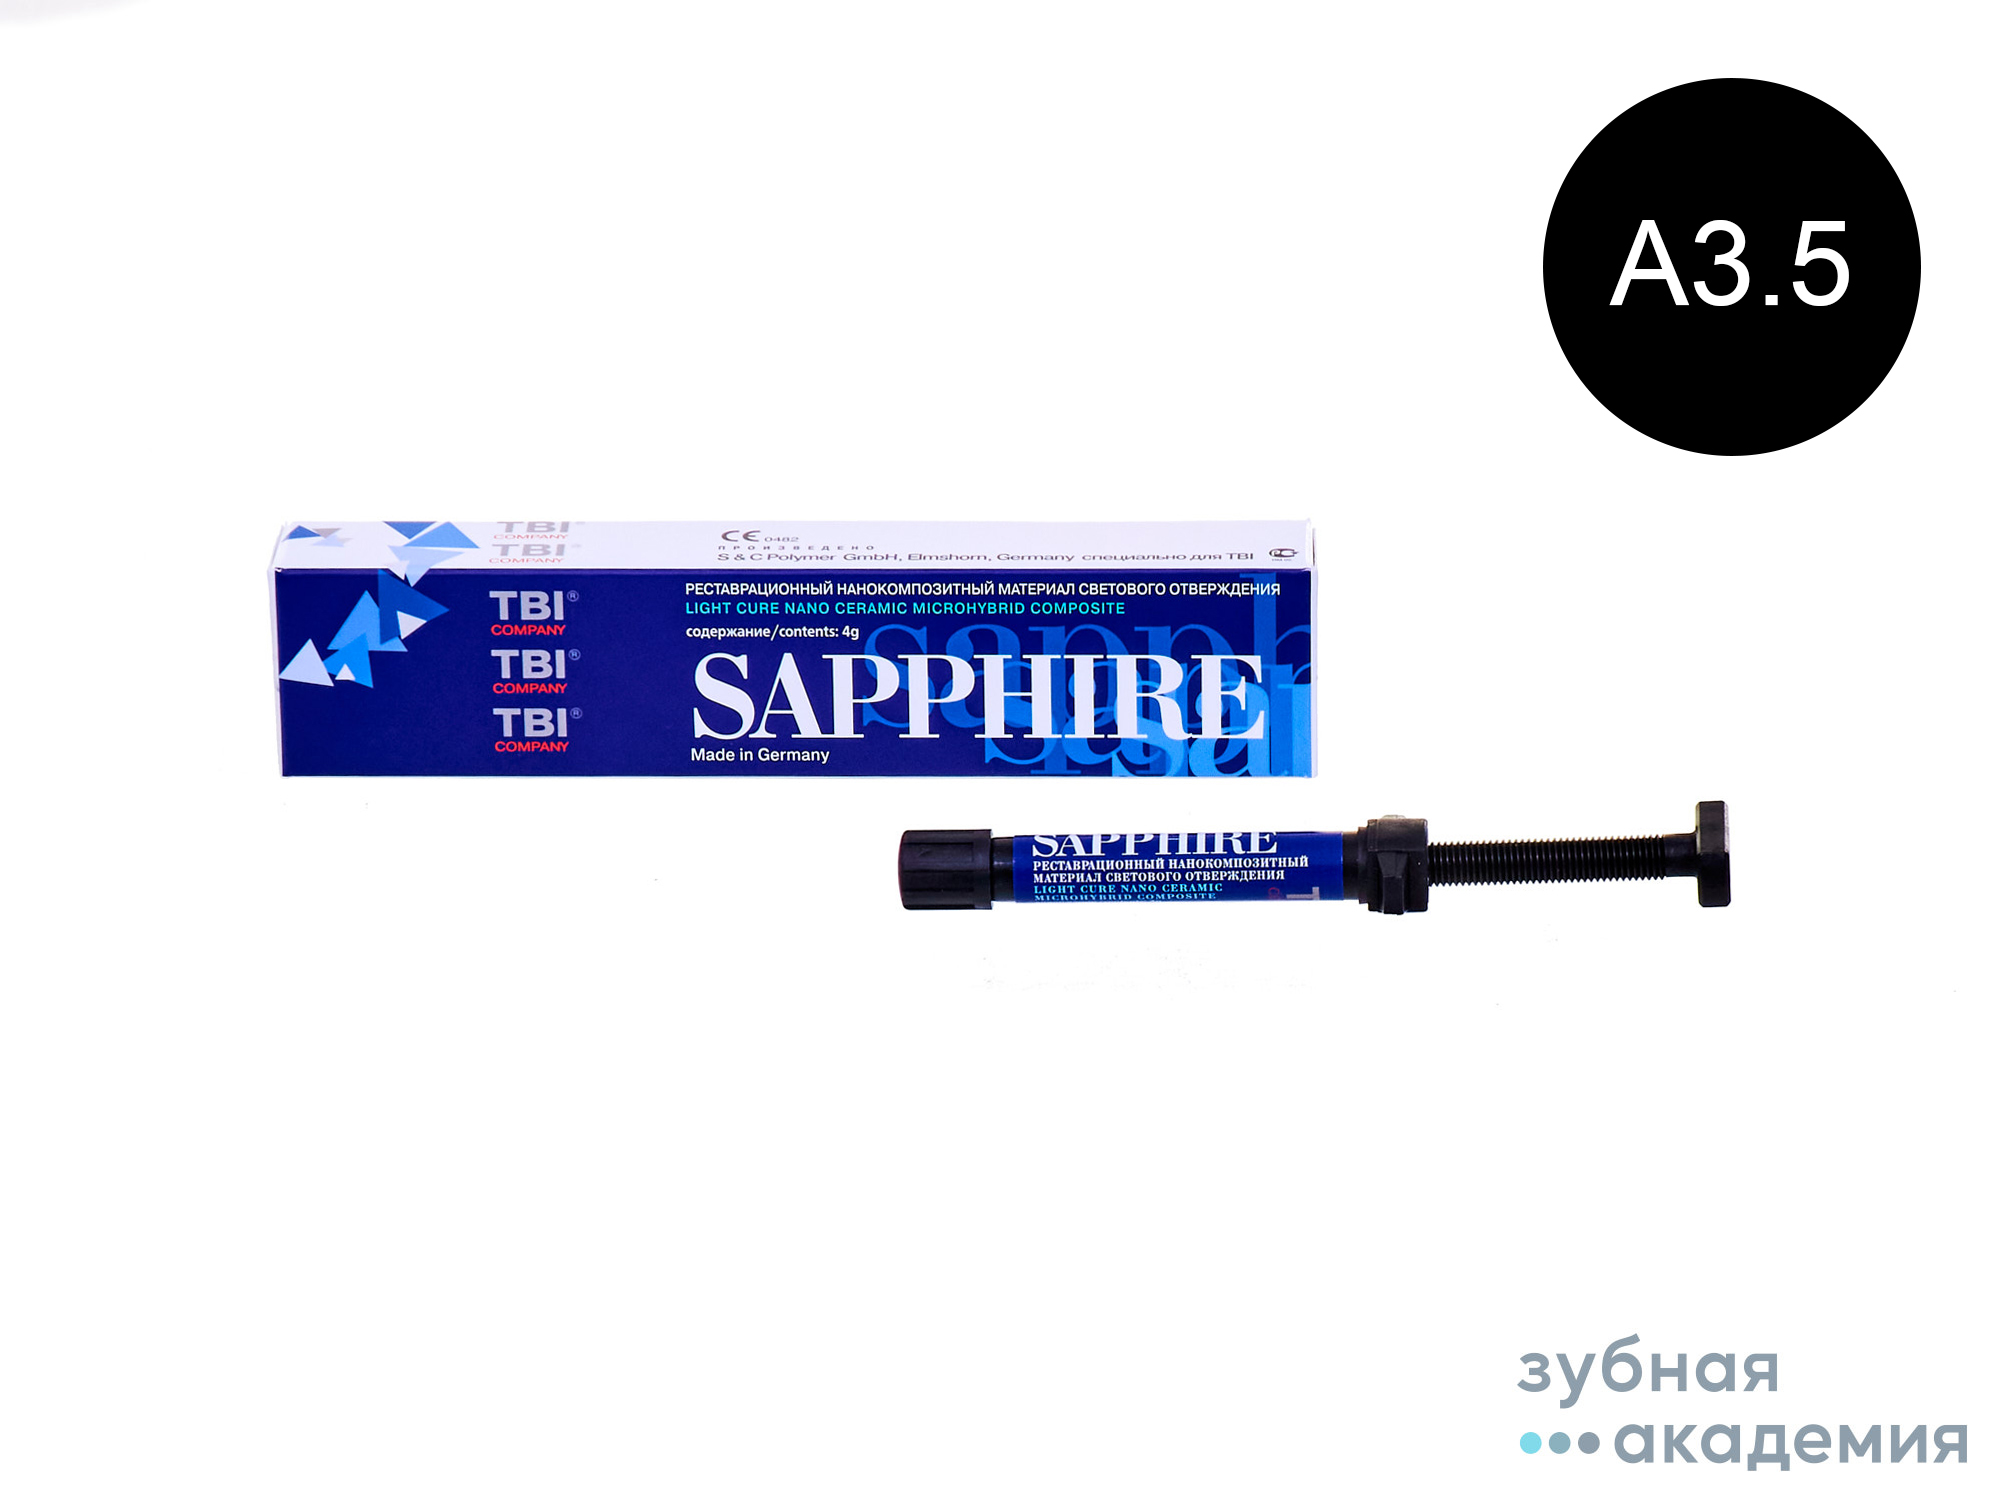 Sapphire А3,5 / Сапфир A3,5 нанокомпозит (4 г) TBI/S&C/Германия